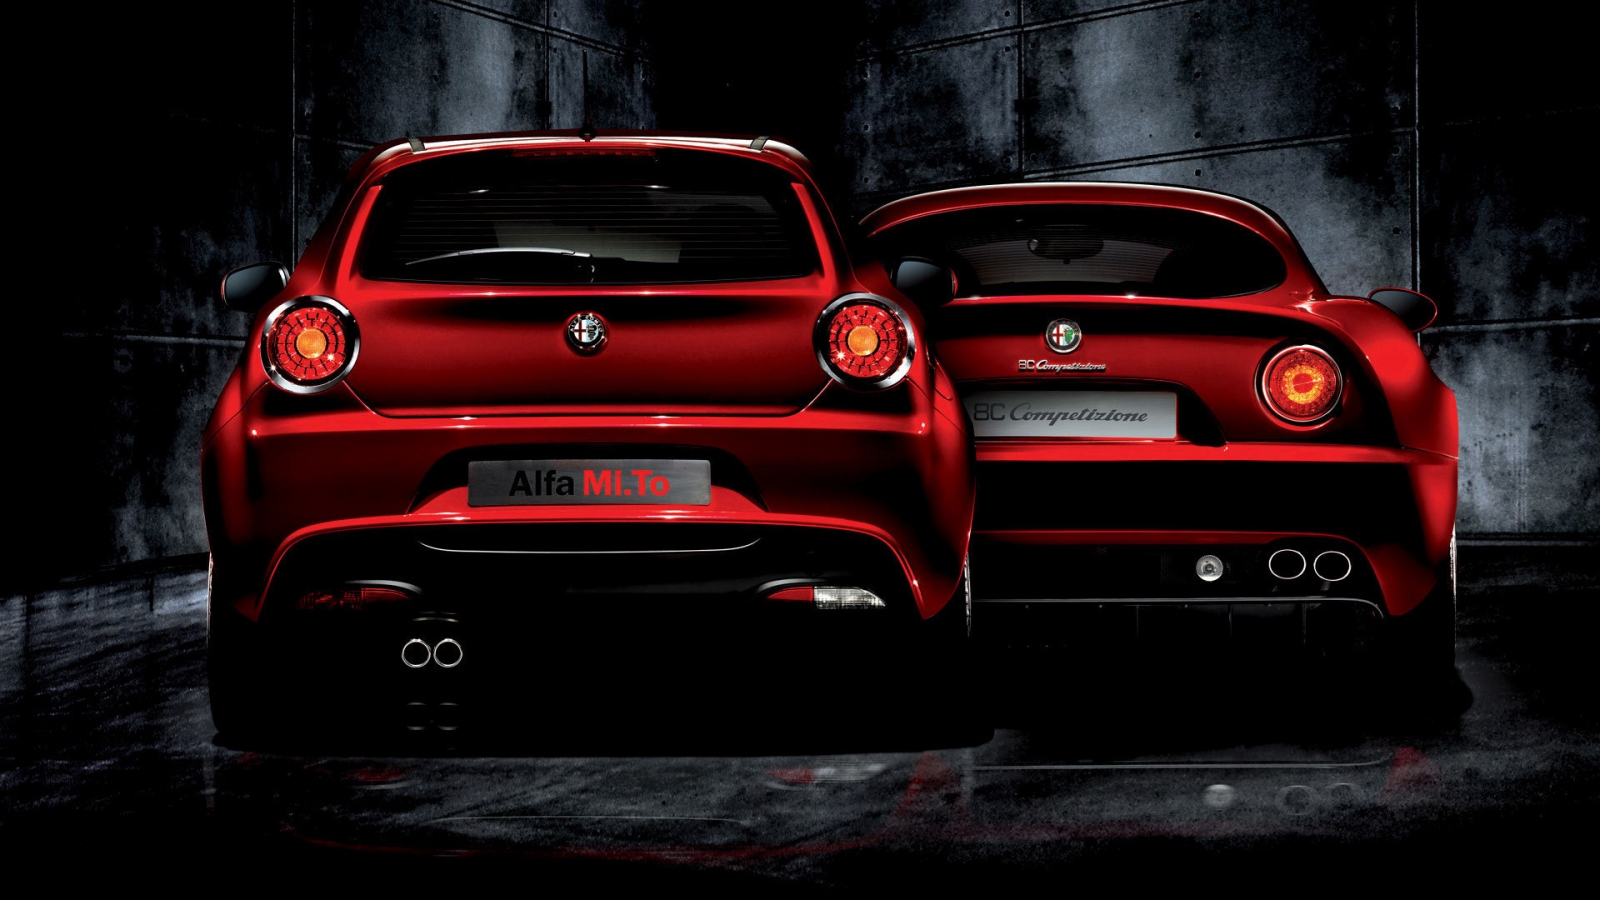 Alfa Romeo Mi To and 8C Competizione for 1600 x 900 HDTV resolution